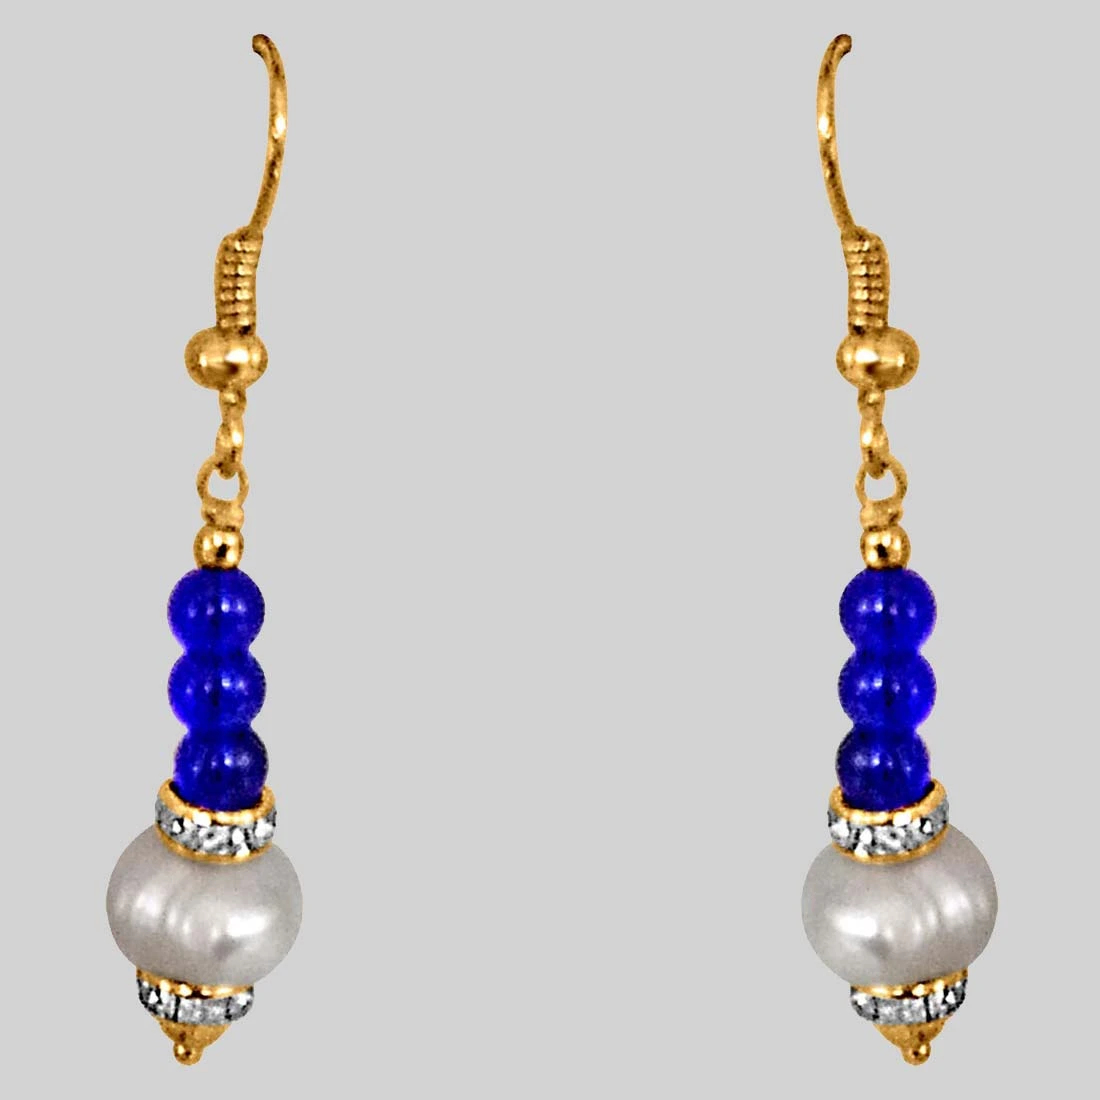 Dangling Real Pearl & Blue Stone Earrings for Women (SE209)